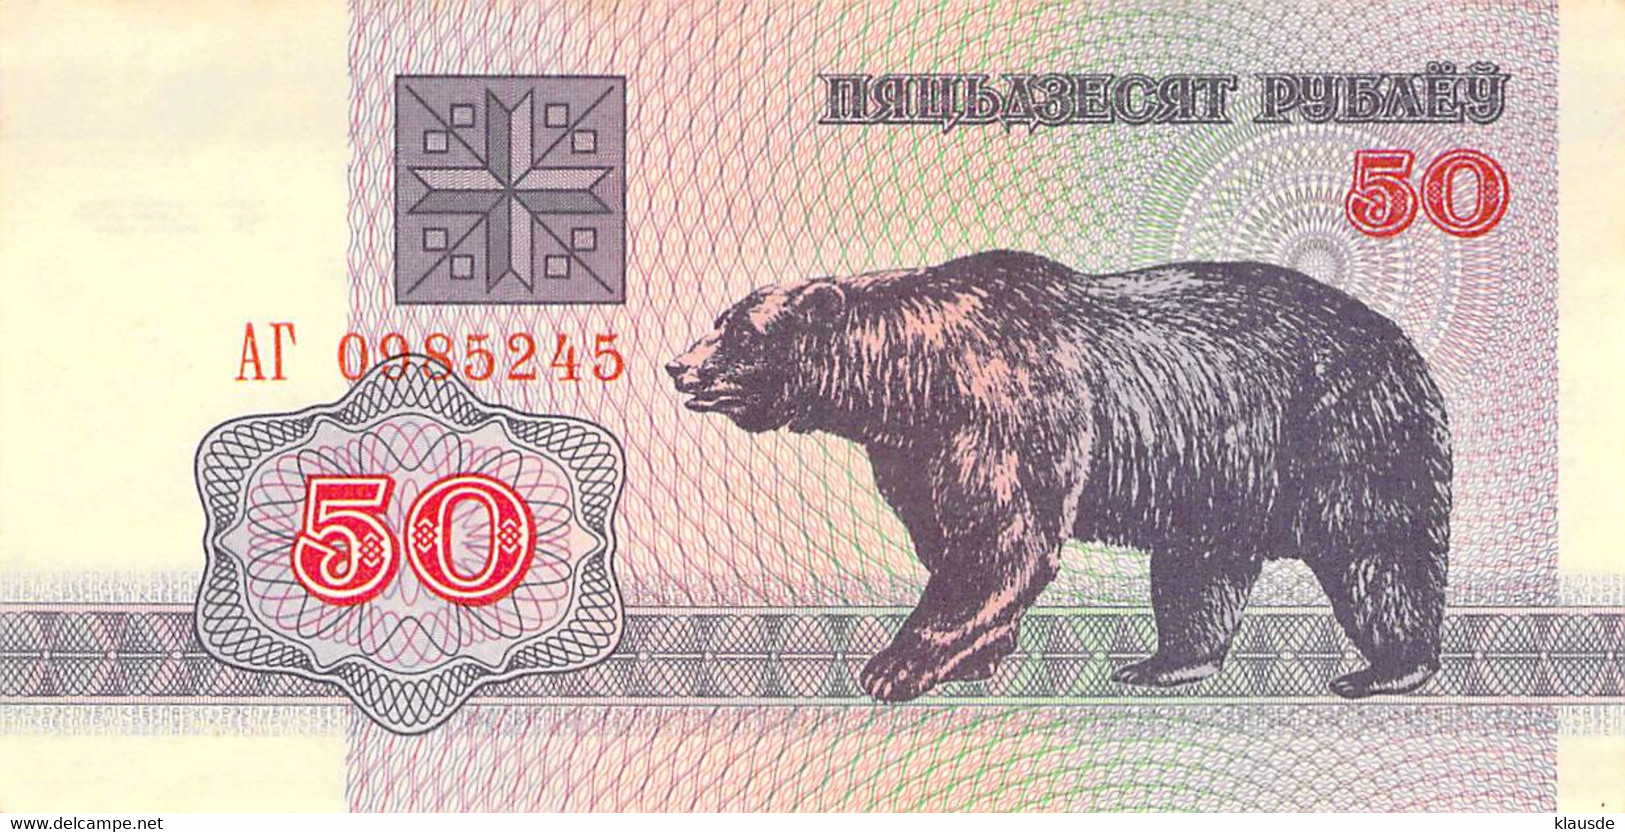 2 Banknoten Je 50 Rubel 2002 UNC Belarus Weissrussland, - Other - Europe